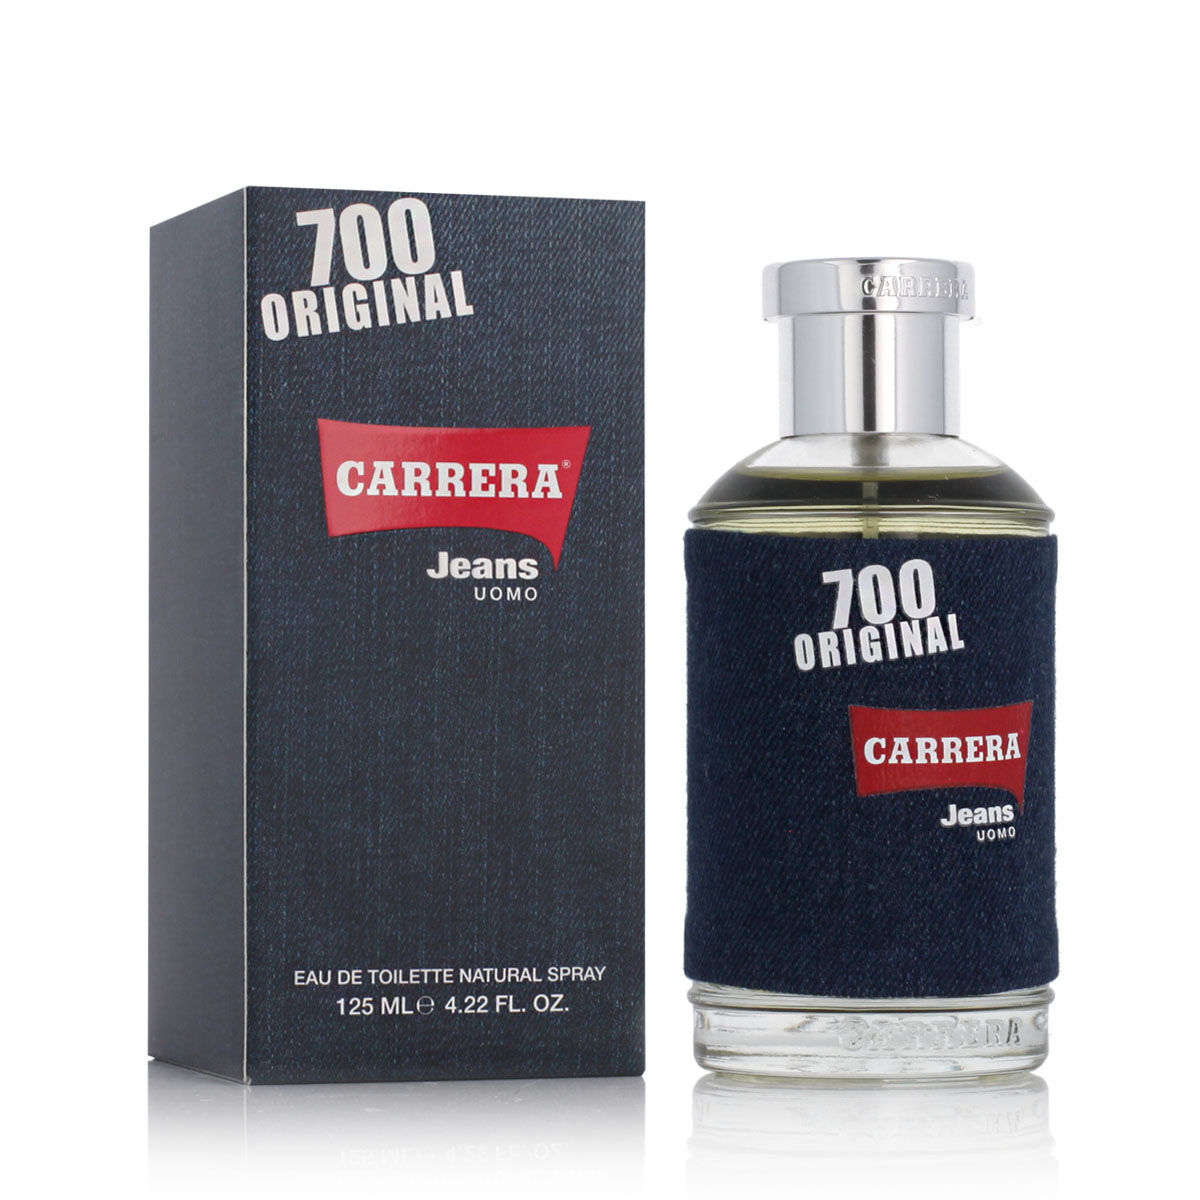 Parfum Homme Carrera EDT 125 ml Jeans 700 Original Uomo